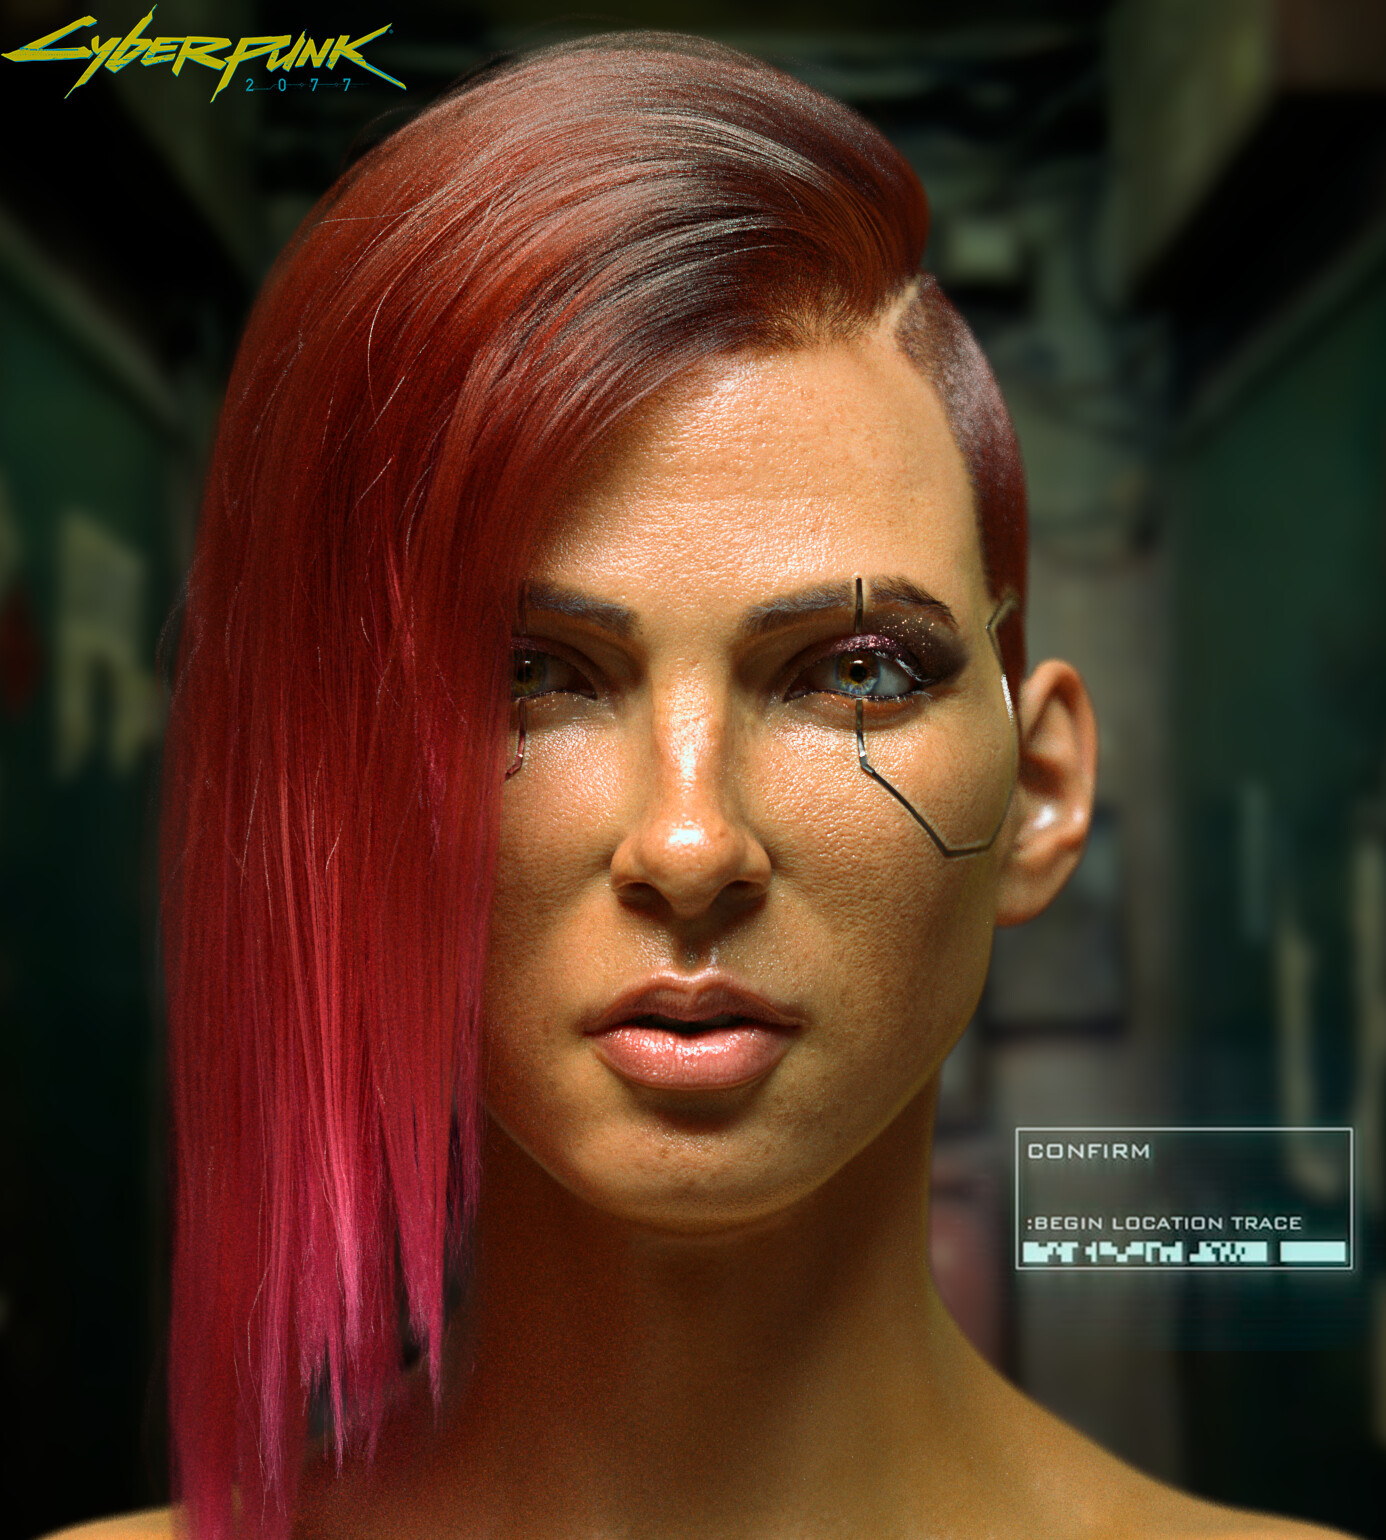 Cyberpunk 2077 Fan Builds Free Online Character Creator That Renders Your  Selfie, Cyberpunk Style